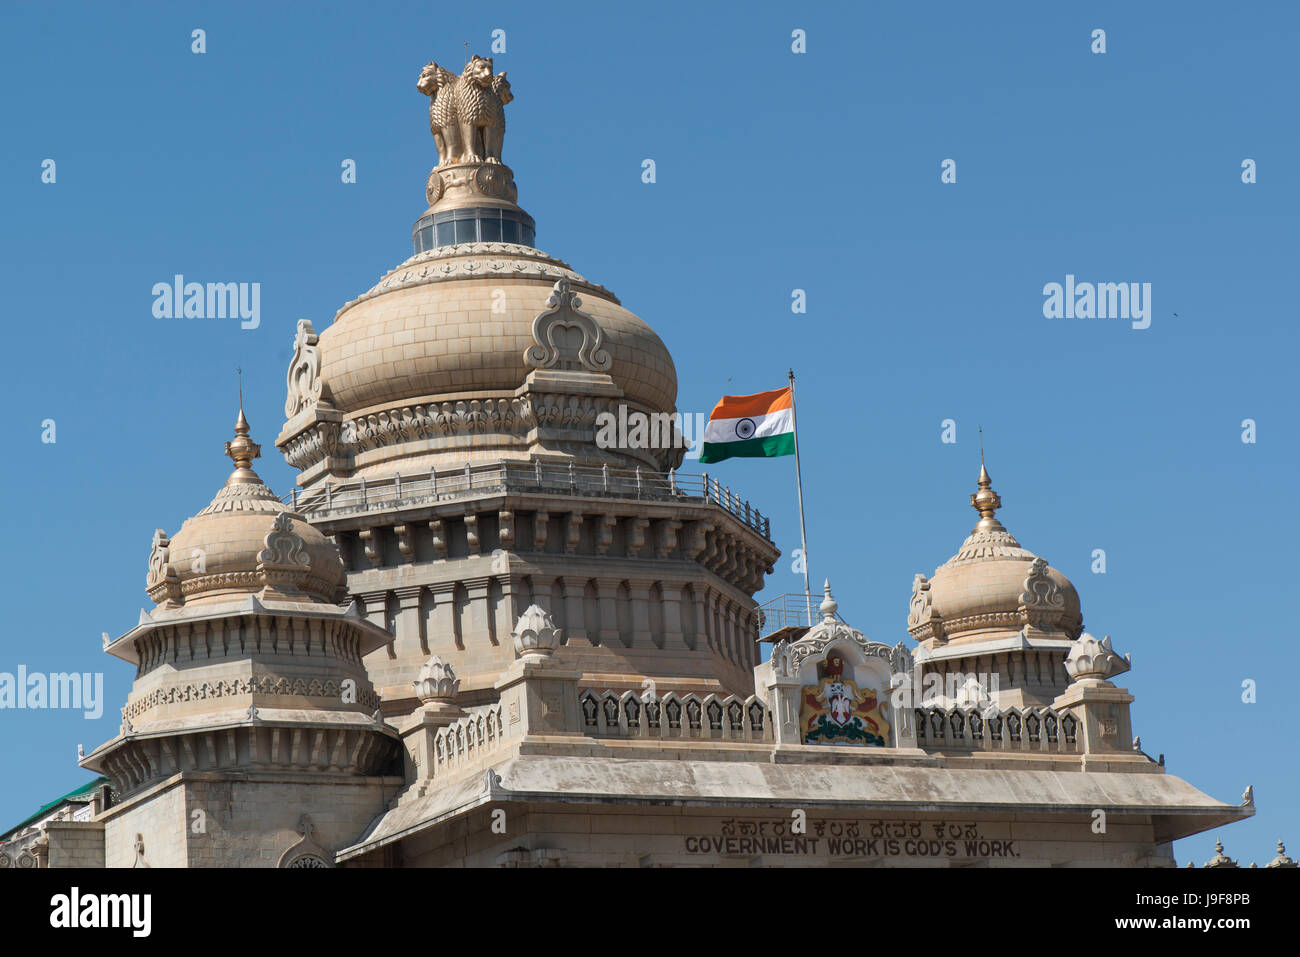 La bandera nacional de la India vuela al frente de las oficinas del gobierno estatal, (Vidhana Soudha) en Bengalaru, Karnatake, India Foto de stock